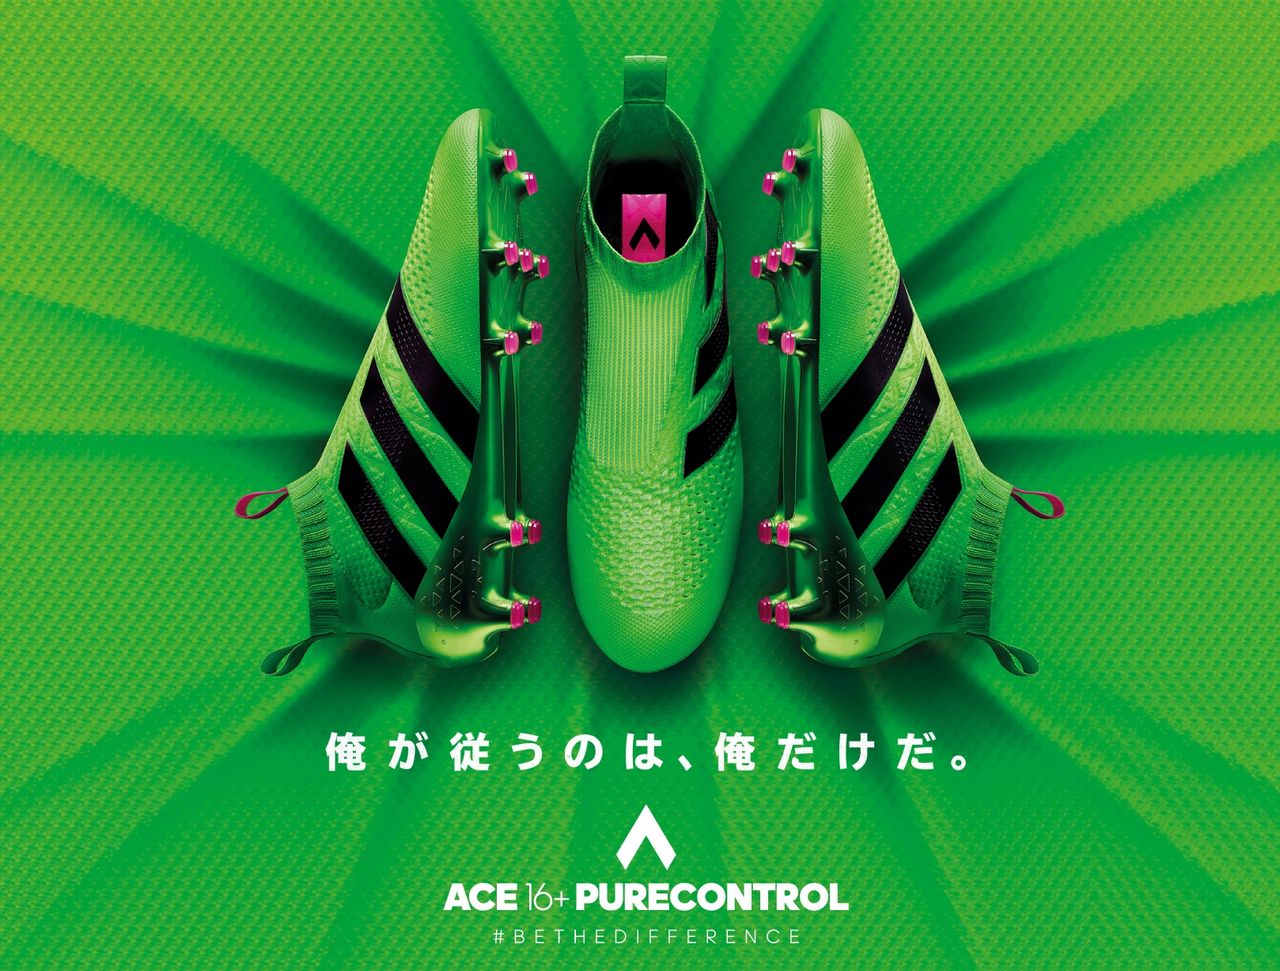 Adidas エース16 ピュアコントロール 正式公開 Kohei S Blog サッカースパイク情報ブログ